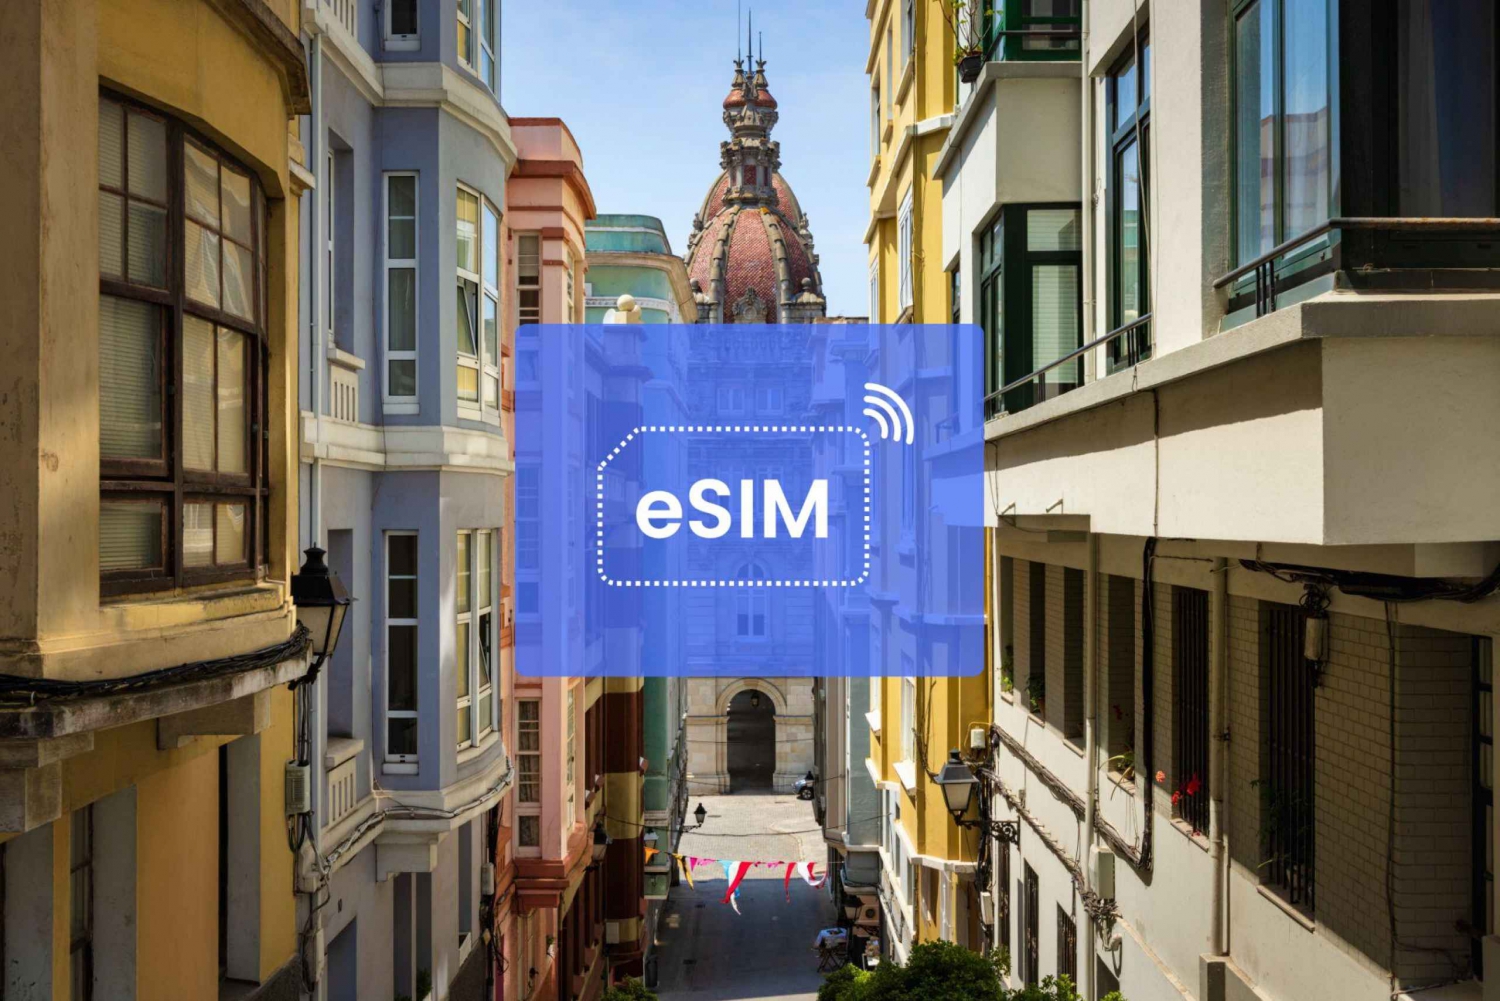 A Coruna: Espanja/ Eurooppa eSIM-verkkovierailu Mobiilidatapaketti: Espanja/ Eurooppa eSIM-verkkovierailu Mobile Data Plan